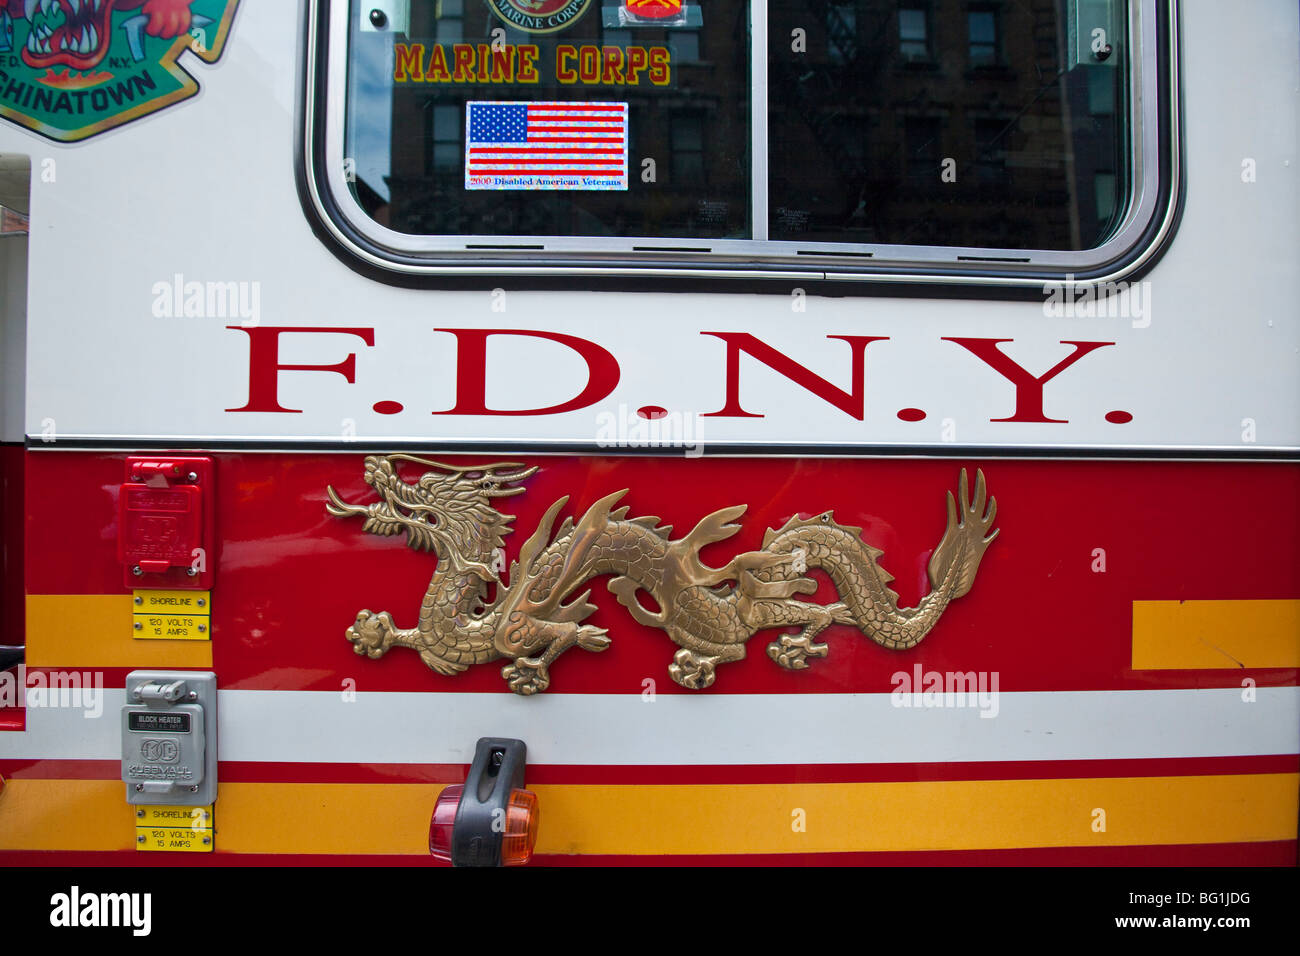 Chinatown Firetruck in Chinatown in Manhattan, New York City Stock Photo